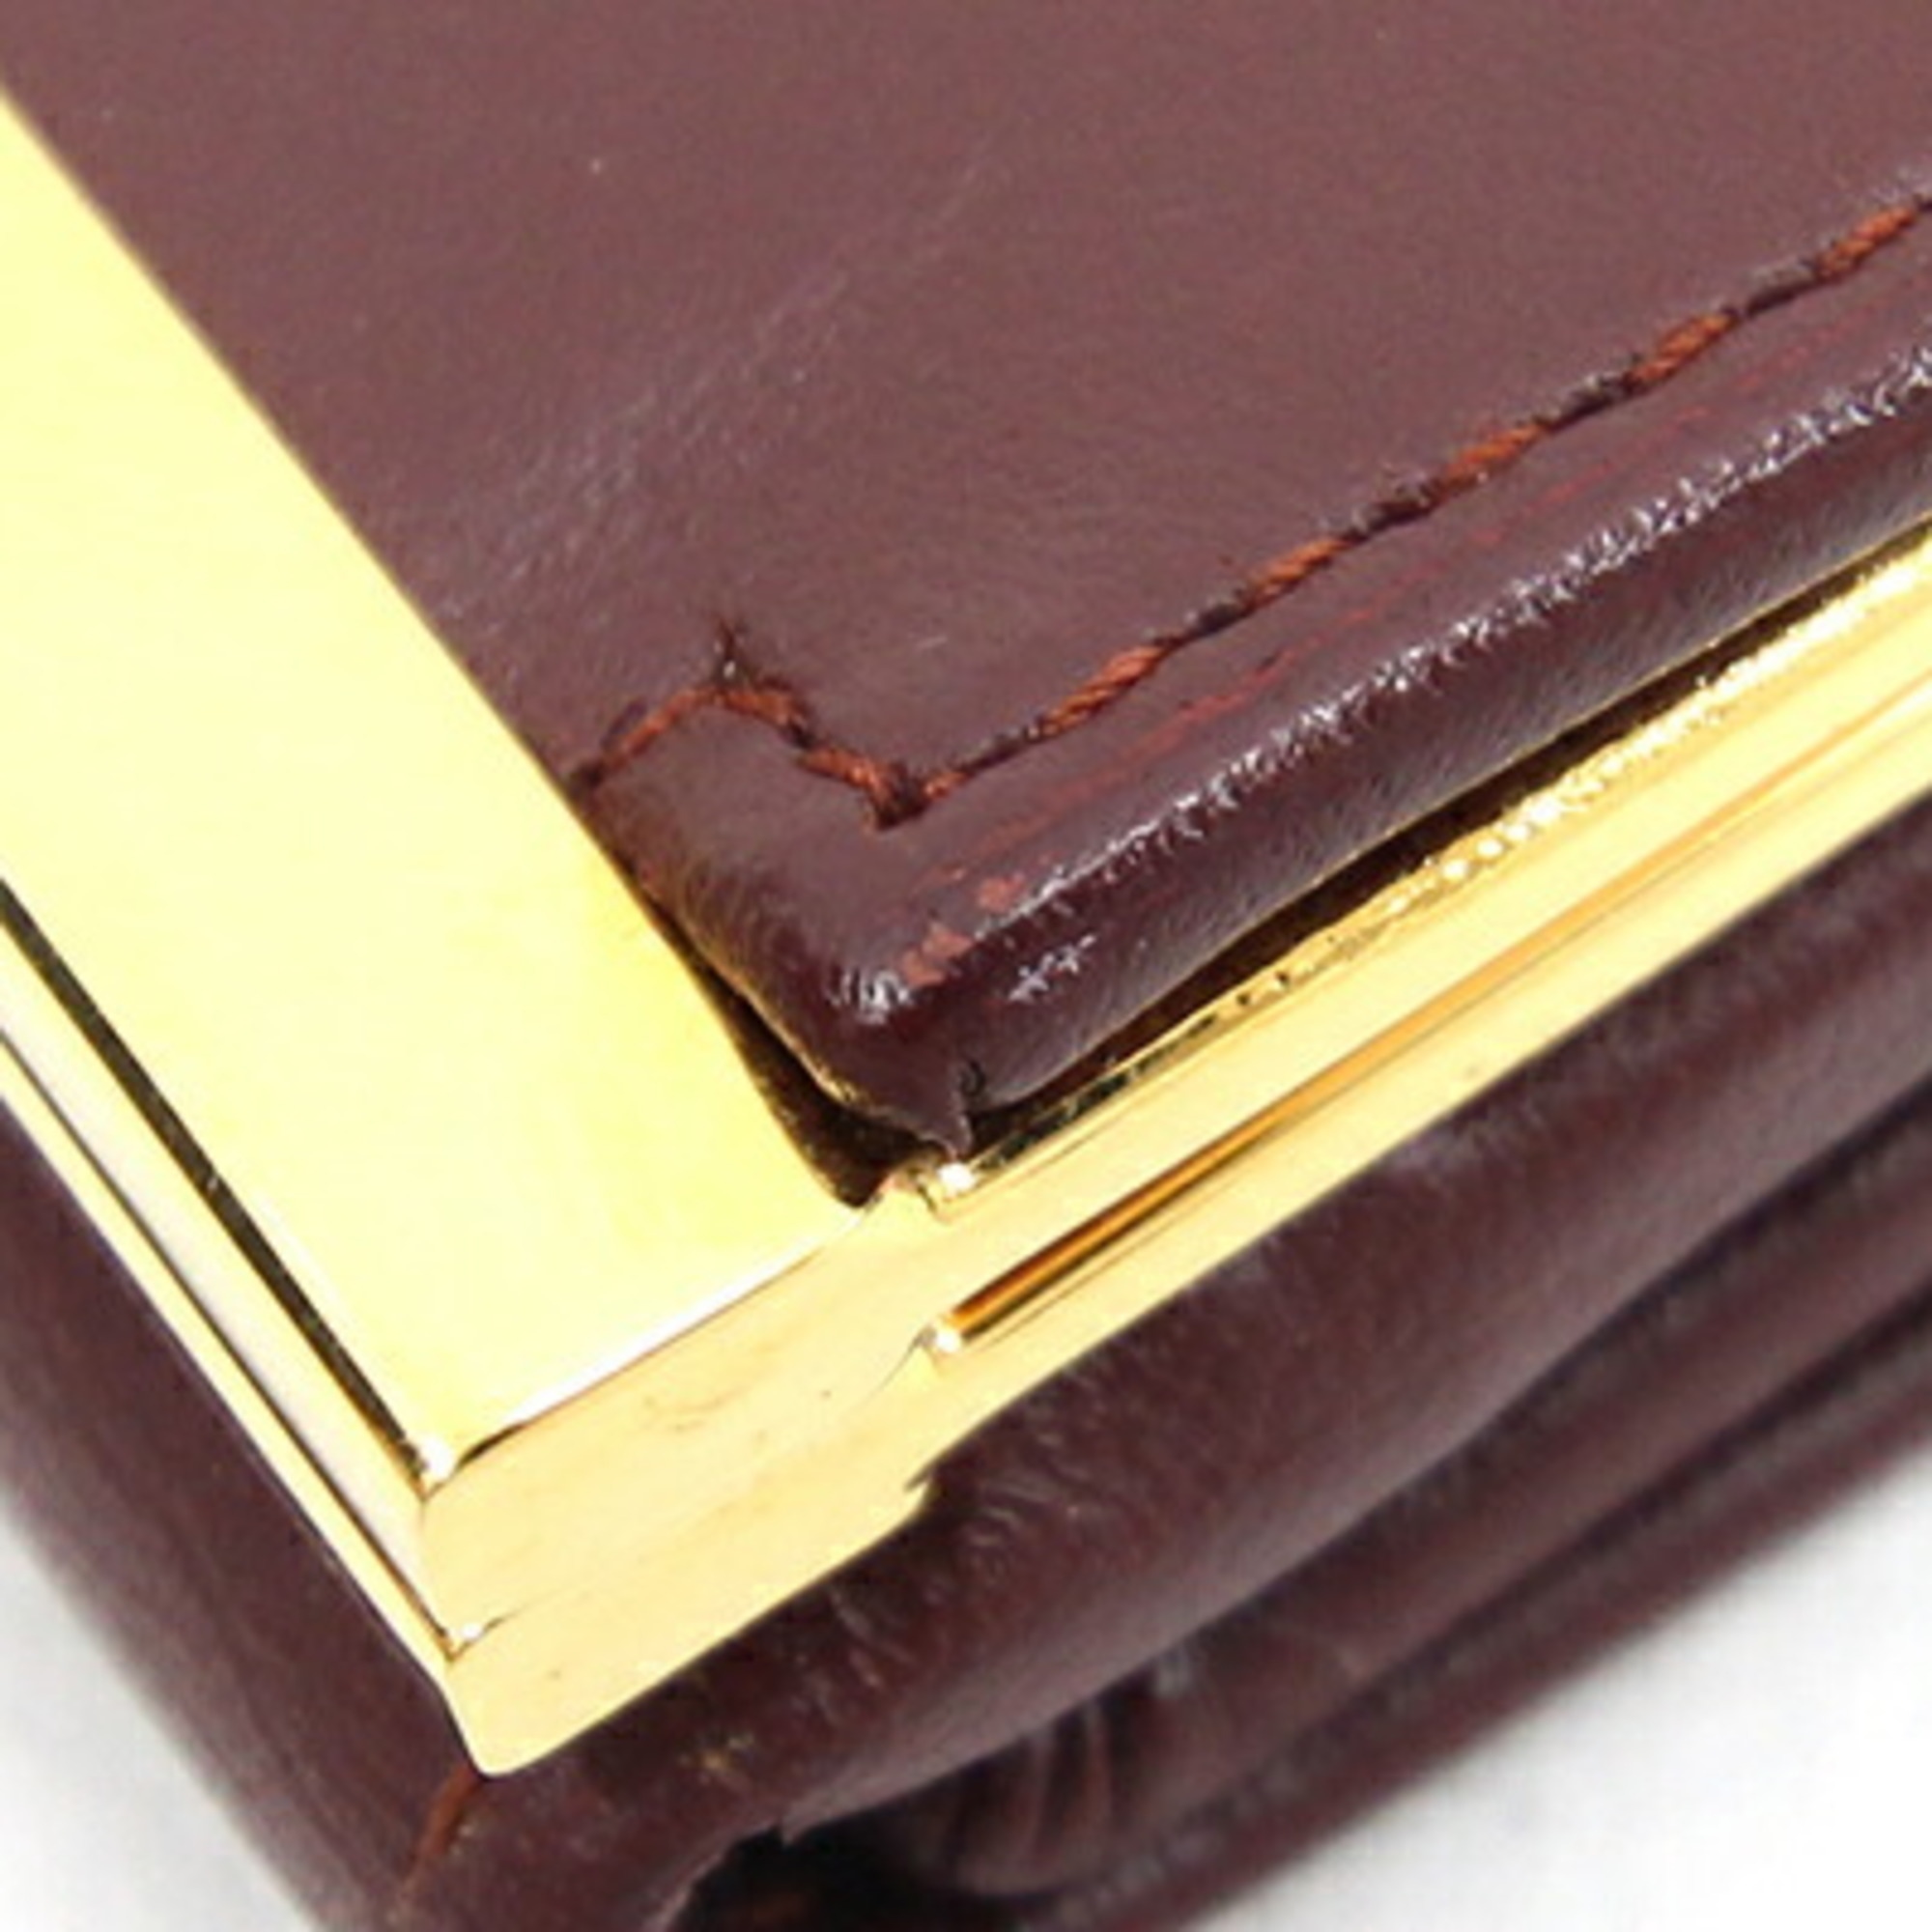 Cartier Tri-fold Wallet Must de L3000039 Bordeaux Calf Leather Double-sided Compact Women's